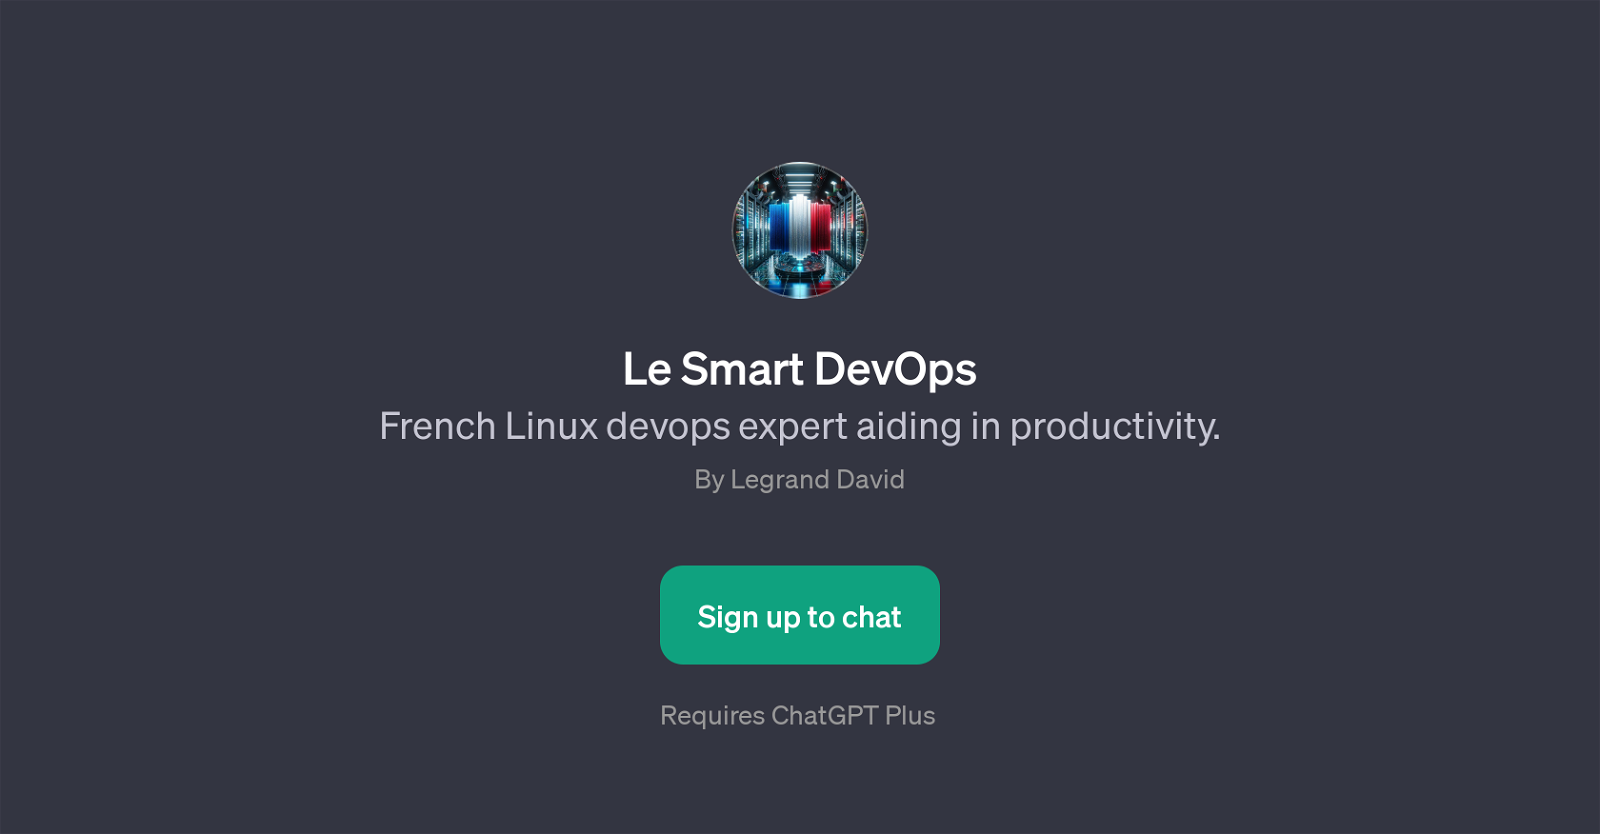 Le Smart DevOps website